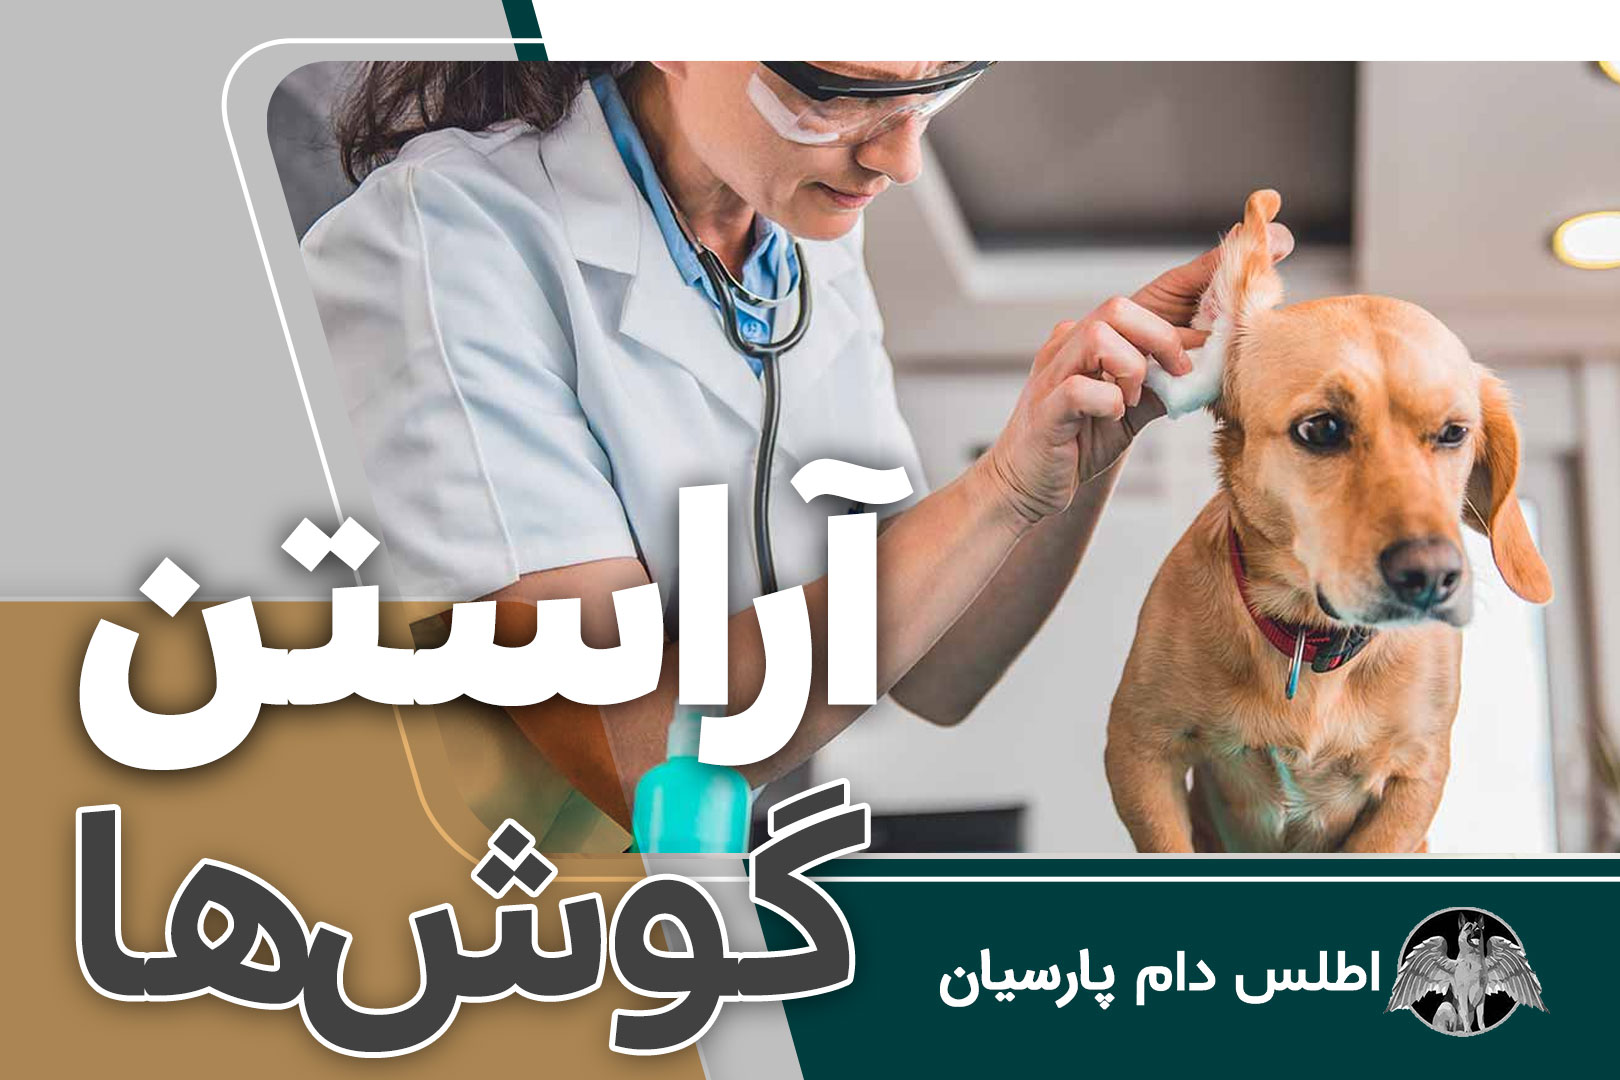 بهداشت گوش در سگ ها (آموزش تمیز کردن گوش سگ)